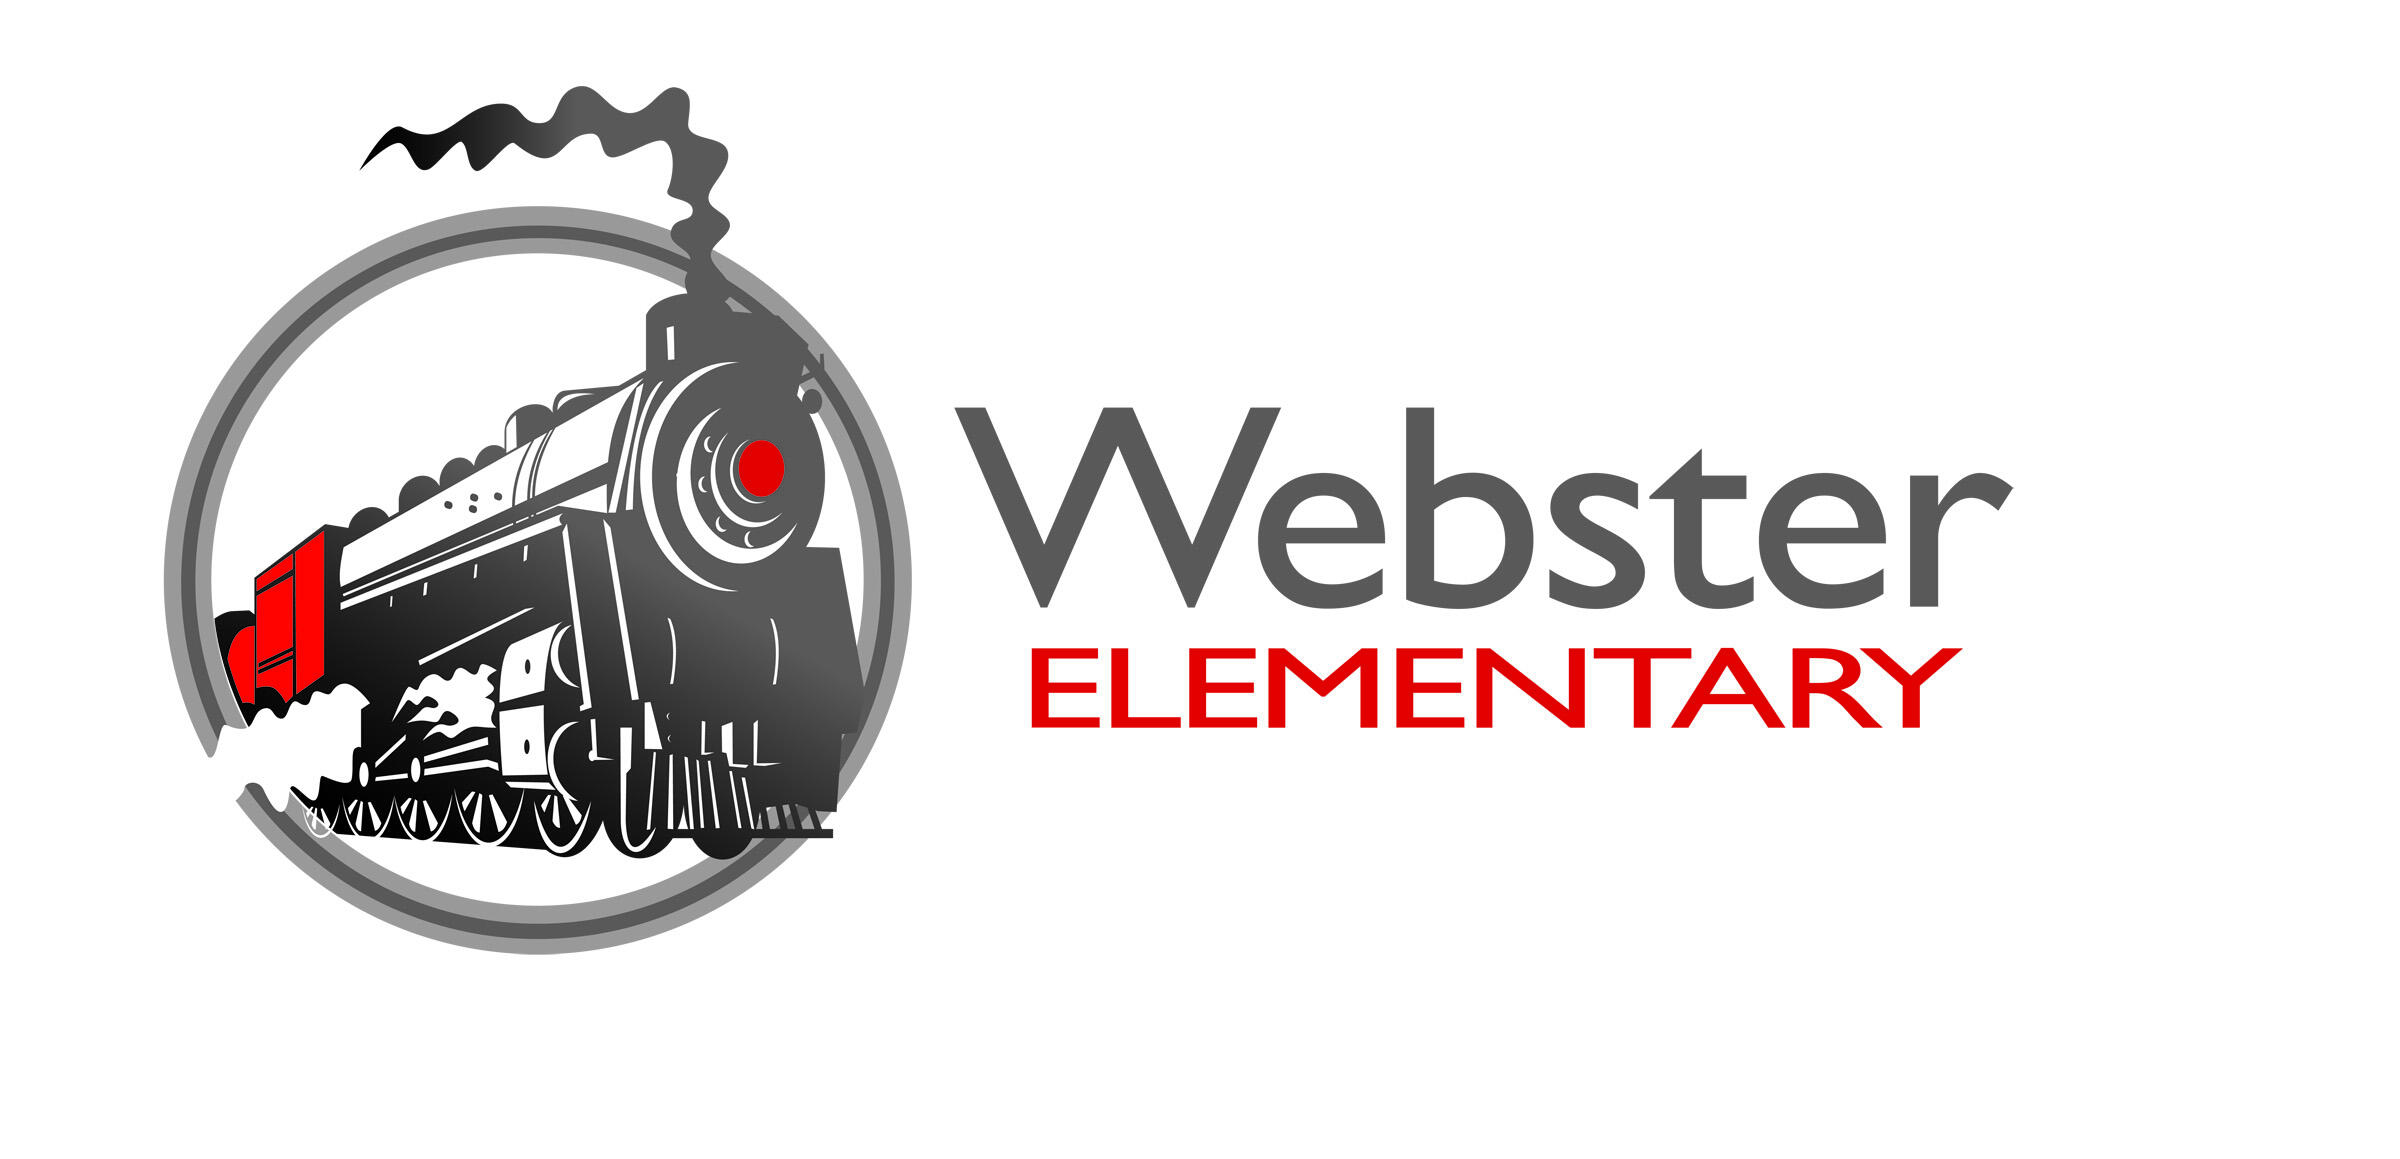 Webster Elementary Logo